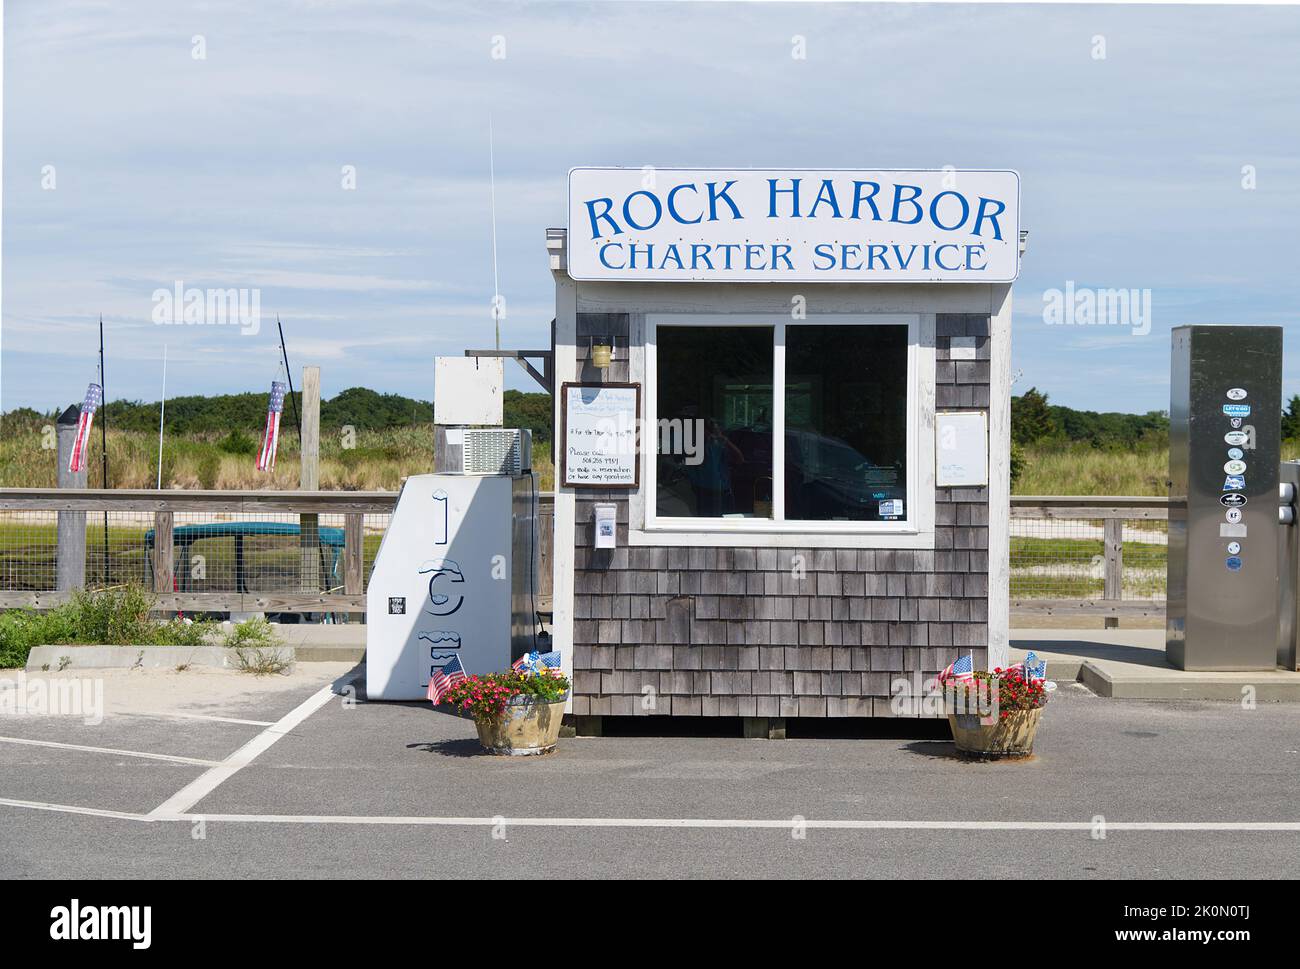 Un puesto de venta de entradas para viajes en barco charter en Rock Harbor, Orleans, Massachusetts, Cape Cod Foto de stock